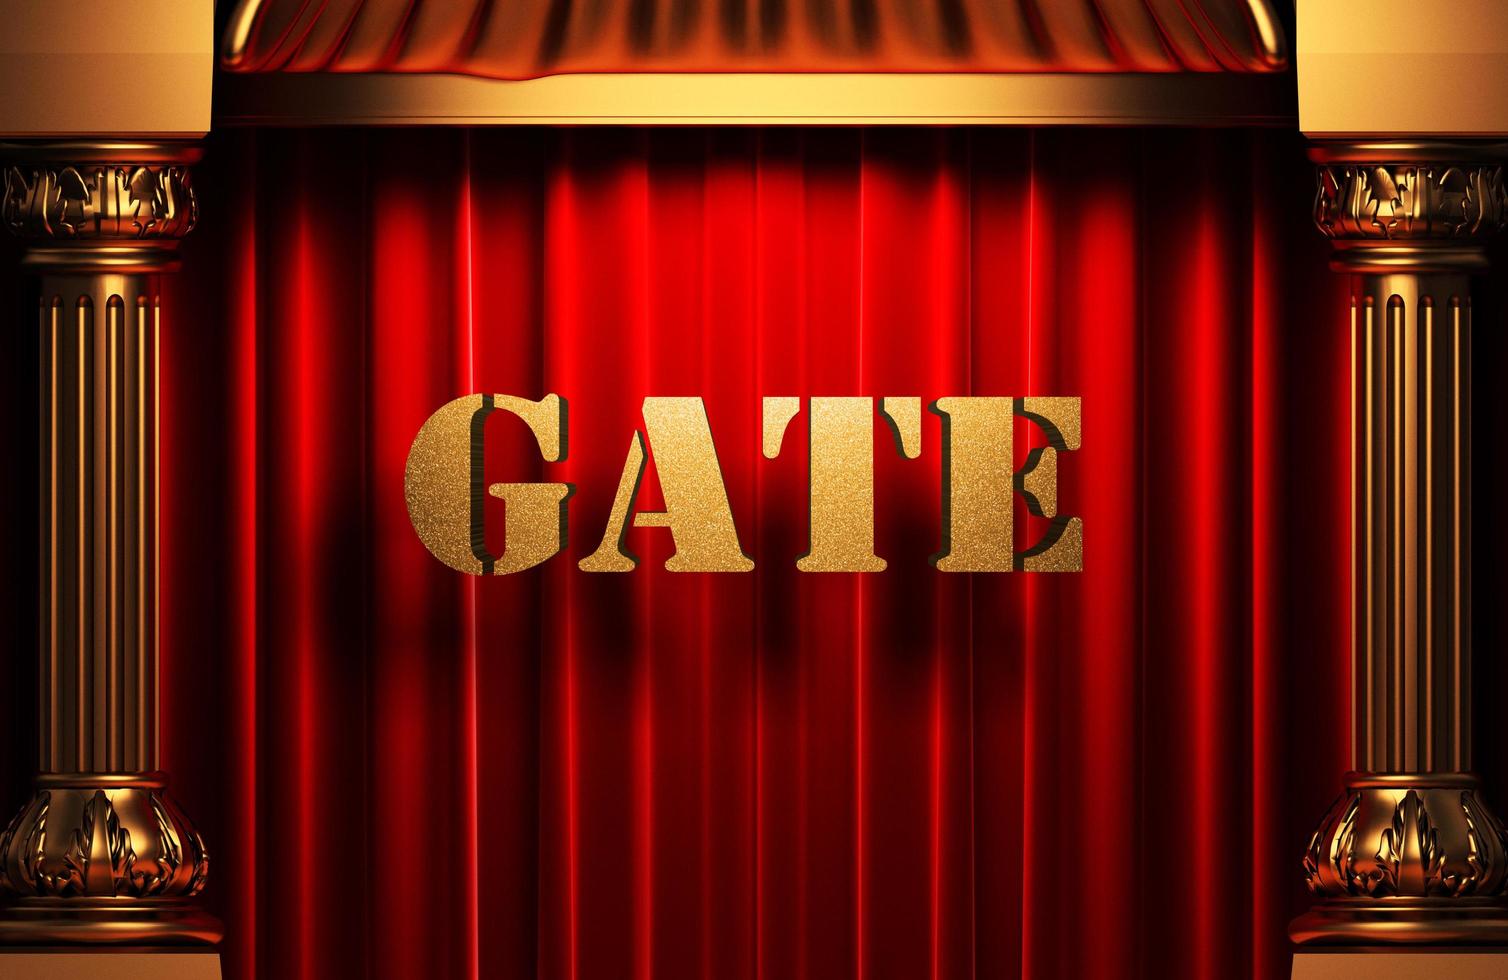 palavra dourada do portão na cortina vermelha foto